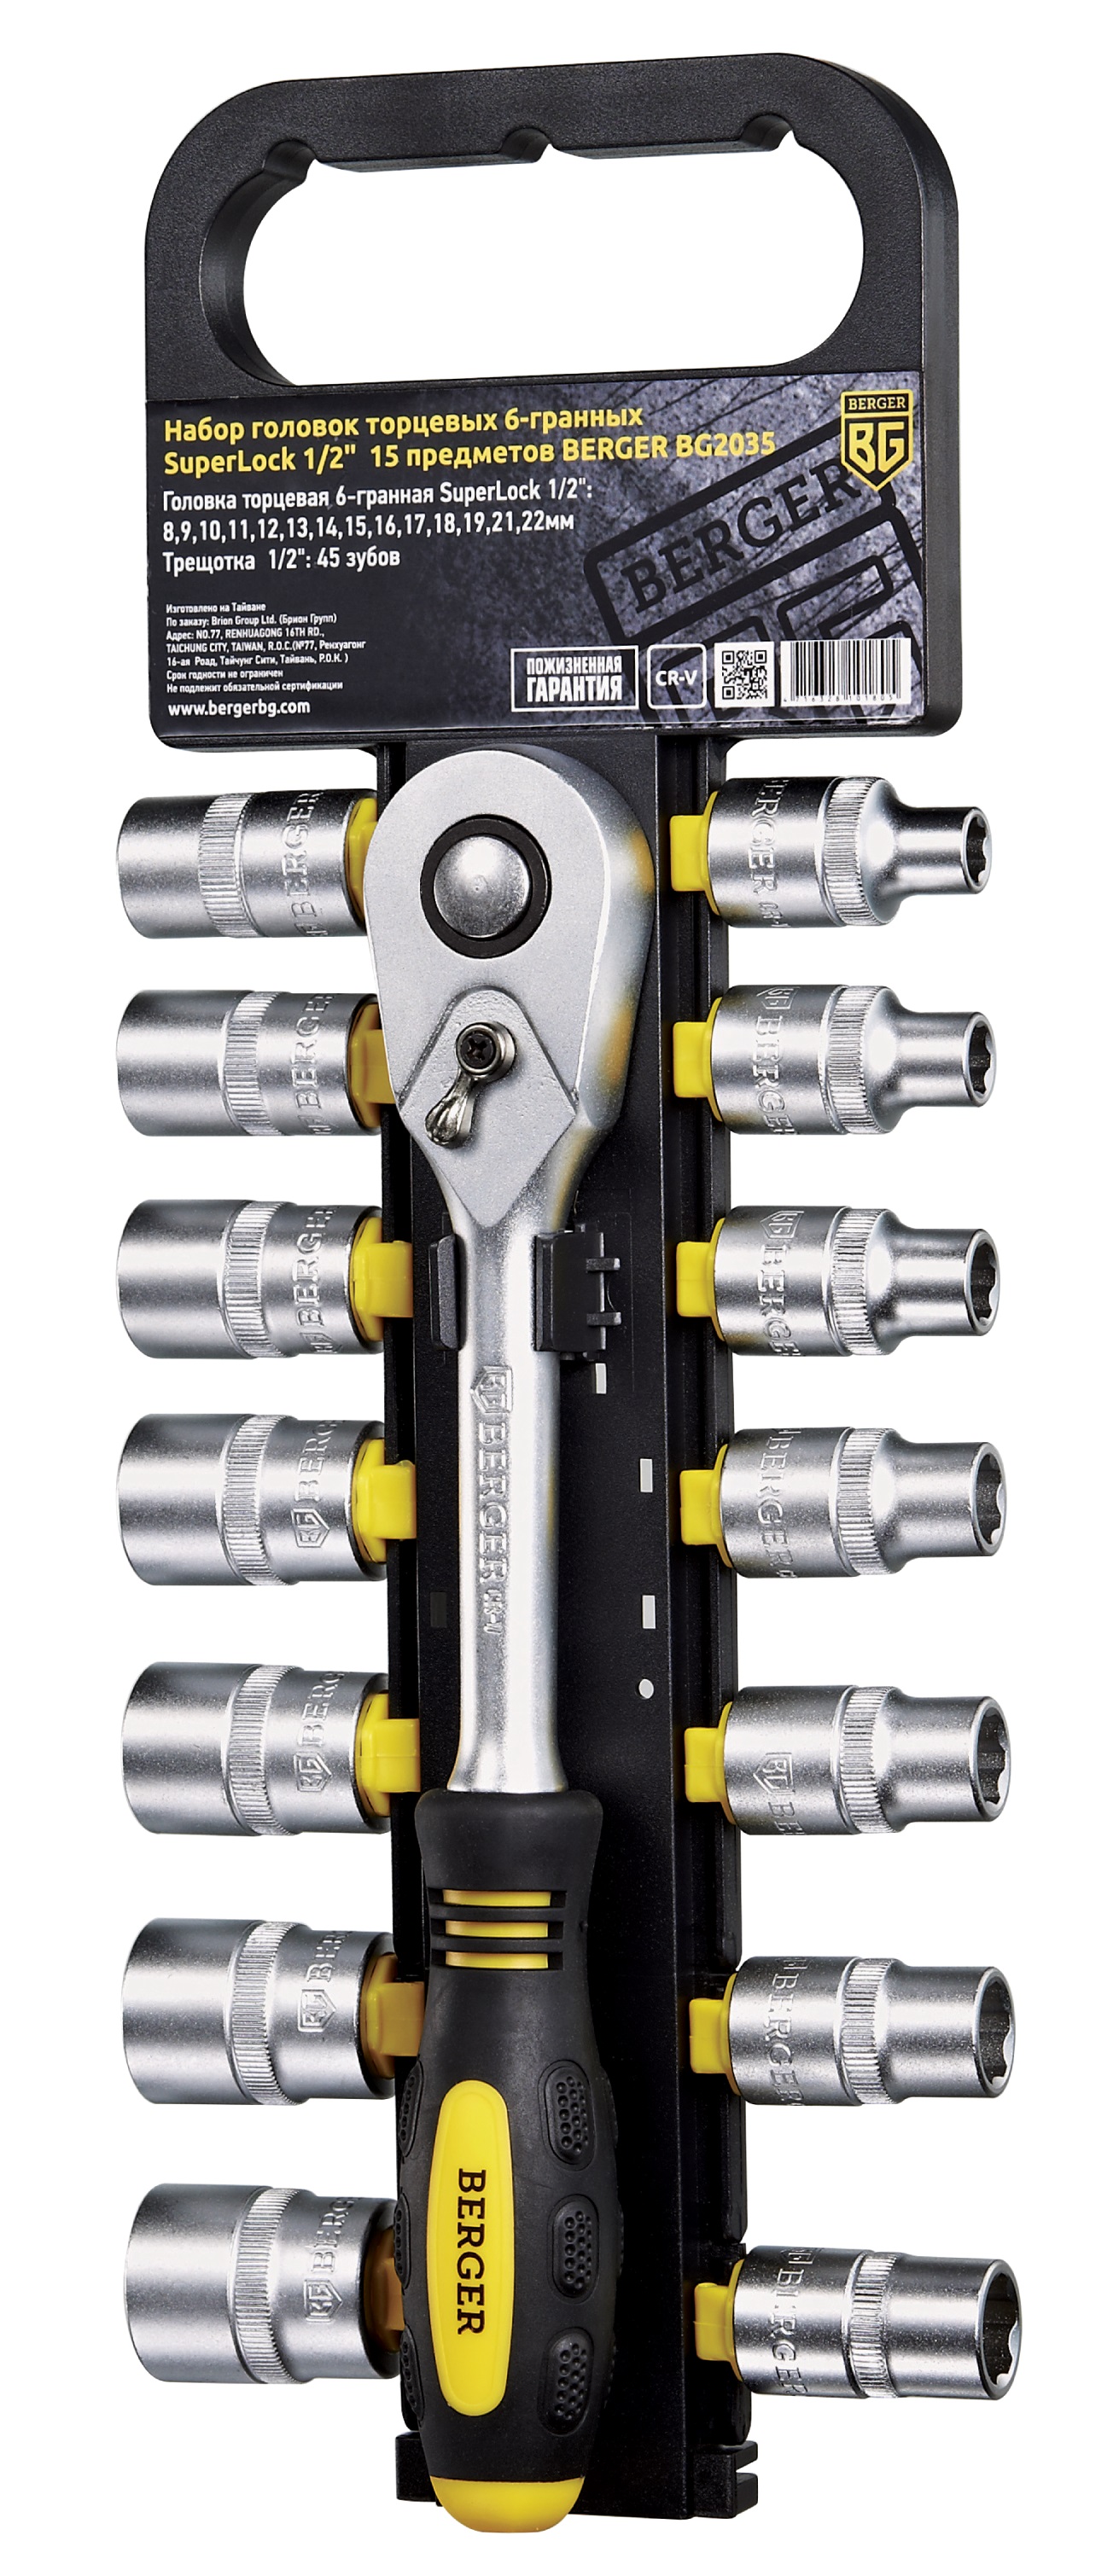 Шестигранная головка Berger BG2035 набор комбинированных ключей berger bg